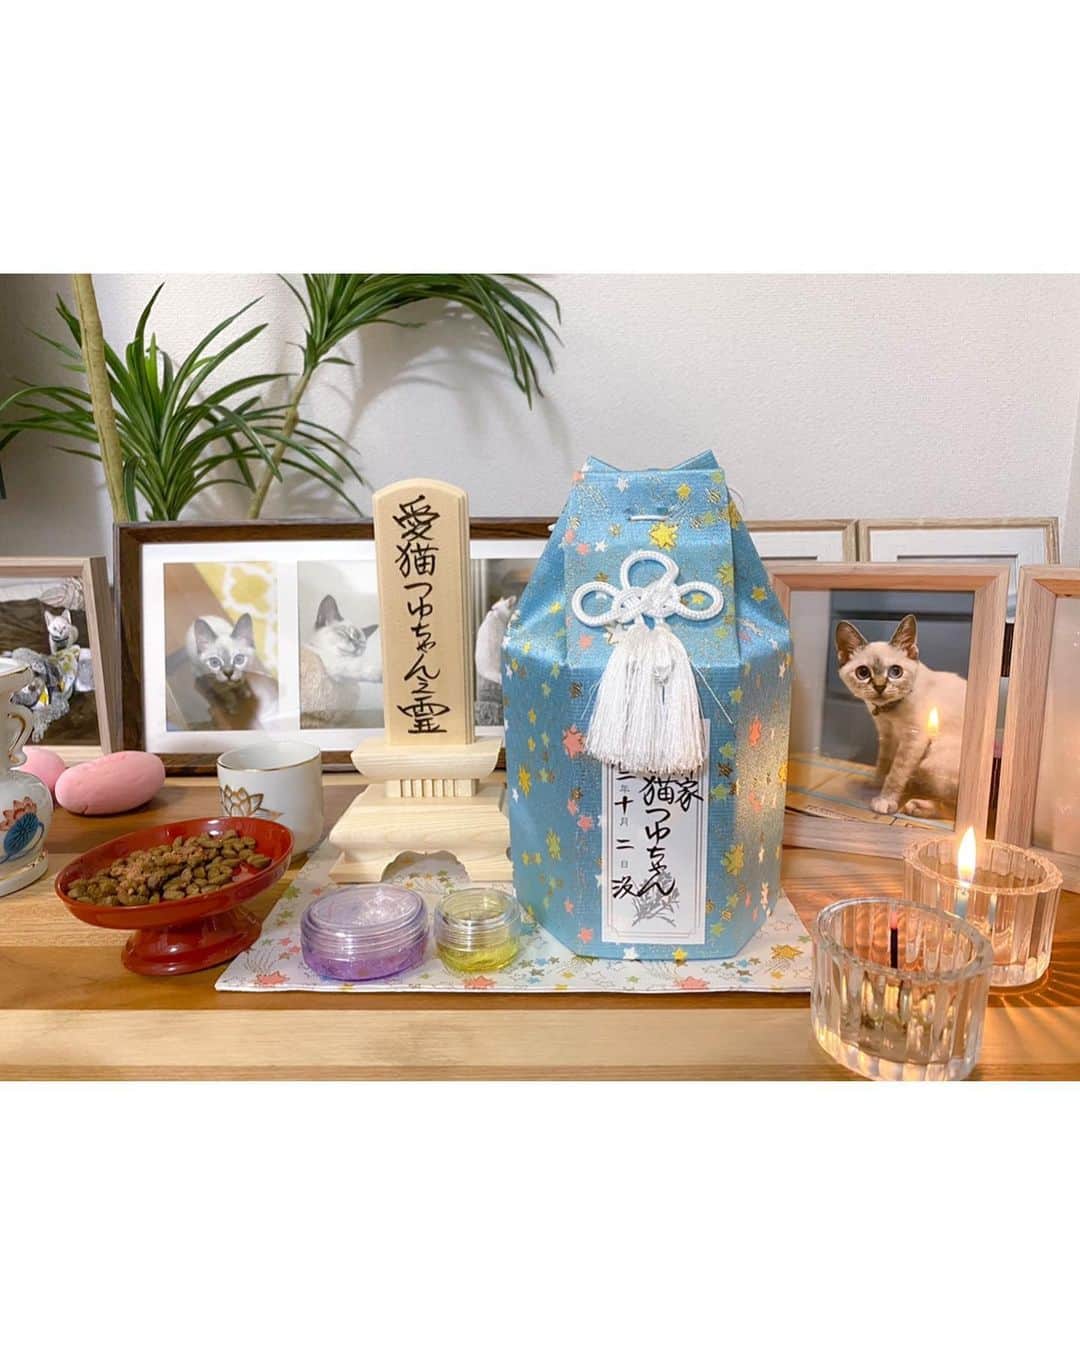 照井和希さんのインスタグラム写真 - (照井和希Instagram)「大阪動物病院でご紹介して頂き 宝塚動物霊園で本日 令和2年10月4日  15時から愛猫つゆのお葬式を行いました。  棺も綺麗な木箱に変え ピンクの可愛いお布団に寝かせて貰い 女の子らしい可愛い色のお花とつゆの大好きな物を沢山詰めました。  七夕の日つゆを保護する為に慌てて買い足したタオル 来てすぐつゆの寝場所がなかなか定まらないから あらゆる所に敷き詰めてどこで寝ても お腹が冷えない様にと買ったタオル 私の枕カバーで良く寝てた つゆのお気に入りだったね。 お家の匂いが染み付いてるからきっとつゆも落ち着くかな？  つゆが寂しくないように初めて買ったお人形は くまが入れてあげてって持って来てくれたんだよ でもそこまで気に入ってなかったよね。笑  妹からも、病院からも、ママの知り合いの方からも ご飯とおやつのお供物、私も嬉しかったです。 穂乃佳も気遣って寄り添ってくれてありがとう。  つゆもほのかにご飯くれー！って 足下まとわりついてたもんね。笑 人懐っこくて誰にでも甘えん坊のつゆだったな  スタッフさんがしっかり三途の川を渡れるようにと つゆにお守り持たせてくれたね。慌てずゆっくり渡れたかな？ 数珠も持ってるんだよ🍀おててが可愛いつゆちゃん。 そして紙を渡され、ギュッと手に祈りを込めるようにと。 私を忘れない様に私の香りを。その紙もつゆのそばへ 素敵な物沢山準備して下さいました。嬉しかったです。  伝え忘れない様に手紙も書きました 愛おしい瞬間を収めたつゆの写真も。 つゆが初めてバルコニーでお外眺めた日の写真も。 つゆの家を忘れない様にと気持ちを込めて。  どの瞬間もつゆを思い出して涙が溢れました 愛おしいつゆとの時間がずっとフラッシュバックして消えなかった  サヨナラの瞬間も名残惜しくて辛かった 沢山言葉で伝えて沢山キスして沢山撫でたけど やっぱり寂しかったです。離したくないって思ってしまいました。  最後は大好きだよと伝え 頭にキスをしてお別れしました。  つゆちゃんが空に登るのを 1人で外で座って眺めてました。 不思議ですが私には熱で揺れる空気の中に いくつもの虹が見えた気がします。 空を見てると元気なつゆが浮かんで 私の感情で引き留めずに、元気に向かわせてあげようって 自然と笑顔で いってらっしゃいが言えました。  小さくなったつゆも愛おしかったです お骨になった我が子も可愛いなって素直に思えました。  最後に壺に入ったつゆを抱き抱えた時 温かくて 冷たいつゆじゃなくて また涙が溢れました。  つゆちゃんは甘えん坊だったから またすぐ形を変えて私に会いに来てくれそうな気がします。 それから 私はつゆって事に気付けそうな気もします。  ボロボロだったつゆ お腹の毛も生えて少し肉付きが良くなって みるみる見違えて綺麗になりました。 辛い思いしたもんね、来世では丈夫な身体で生まれて来てね いつか私のお腹に戻って来てくれると嬉しいな  それでも猫だったつゆを私は絶対に忘れないよ🌈🐾  つゆと日向ぼっこするのが私の夢でした 季節が変わり、部屋に太陽の光が入る様になった つゆが入院してる間早くここでつゆを 抱き締めてゴロゴロしたいなって思ってた  つゆに夏と違うぽかぽかした太陽を感じさせてあげたかった。 叶わなかったって散々泣いたけど お葬式に向かう車の中でつゆちゃんを優しい太陽の光が 包んでくれました。最後の最後に神様は 私のお願いを叶えてくれました。  つゆ、幸せだったね。 甘えたくなったらまたいつでも降りて来るんだよ 私はずっとずっと、ずっとずっとつゆの事を想ってます。  骨壺の色は梅雨時期の色に合わせてみました 星が沢山で七夕っぽいね。🎋 水色を見ると私はつゆの顔が浮かびます。 7月7日は織姫と彦星じゃなくて、つゆと和希だよ😂🍀笑 つゆちゃん、忘れないように☺️  素敵なお葬式行えた事に感謝してもしきれません 手厚く、丁寧に、つゆを空に送って下さいました 私も安心してつゆを見送る事ができました 猫ちゃんも居たし、沢山お友達が眠ってるから つゆも安心だね🐾  書きたいことはまだまだあるけど 忘れない様に今日はここまでで留めておきます  愛するという感情は愛おしく尊いです こんな気持ちにさせてくれた娘に感謝 撫でたいな、会いたいよ。 本音はやっぱり寂しいです。  私と同じタイミングでお見送りに来たご家族 お母さんが凄く泣いてた。それを見て私も泣いてしまった 全然知らない人だけど抱きしめてあげたかった  つゆちゃん、あのお母さんのところの 猫ちゃんかな？ワンちゃんかな？もし一緒に向かったなら そっちで 仲良くしてあげてね   つゆ、お友達沢山作ってね 大好きだよ。  #保護猫を家族に #保護犬を家族に」10月4日 21時54分 - kazu24ki